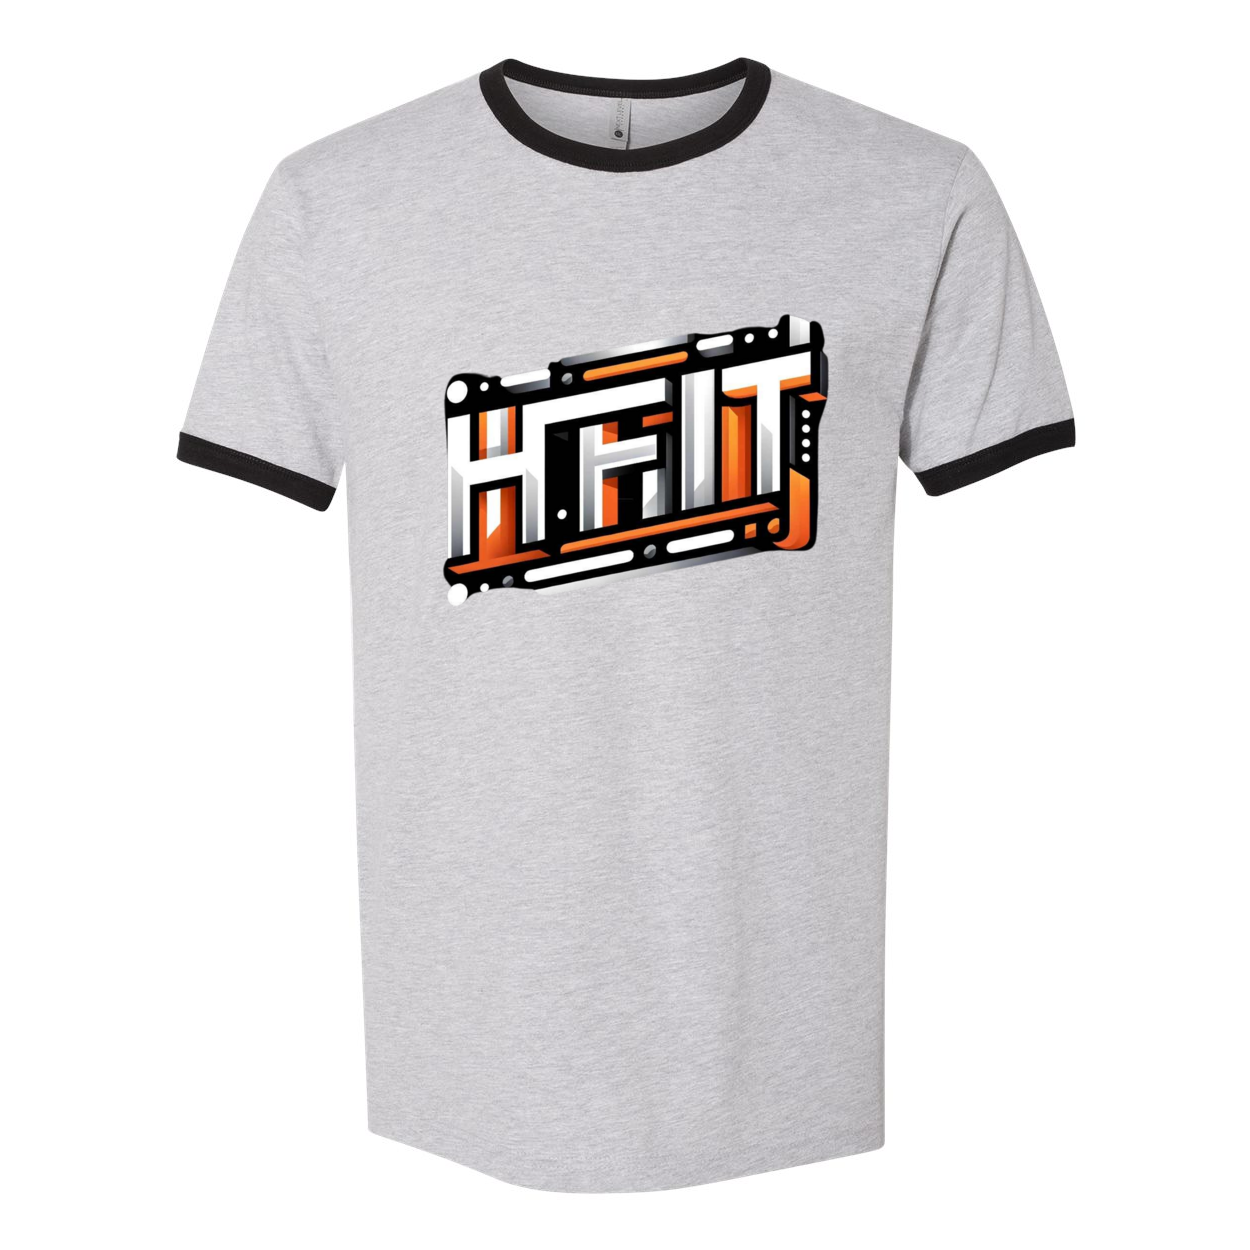 HFIT Next Level Unisex Cotton Ringer T-Shirt Top